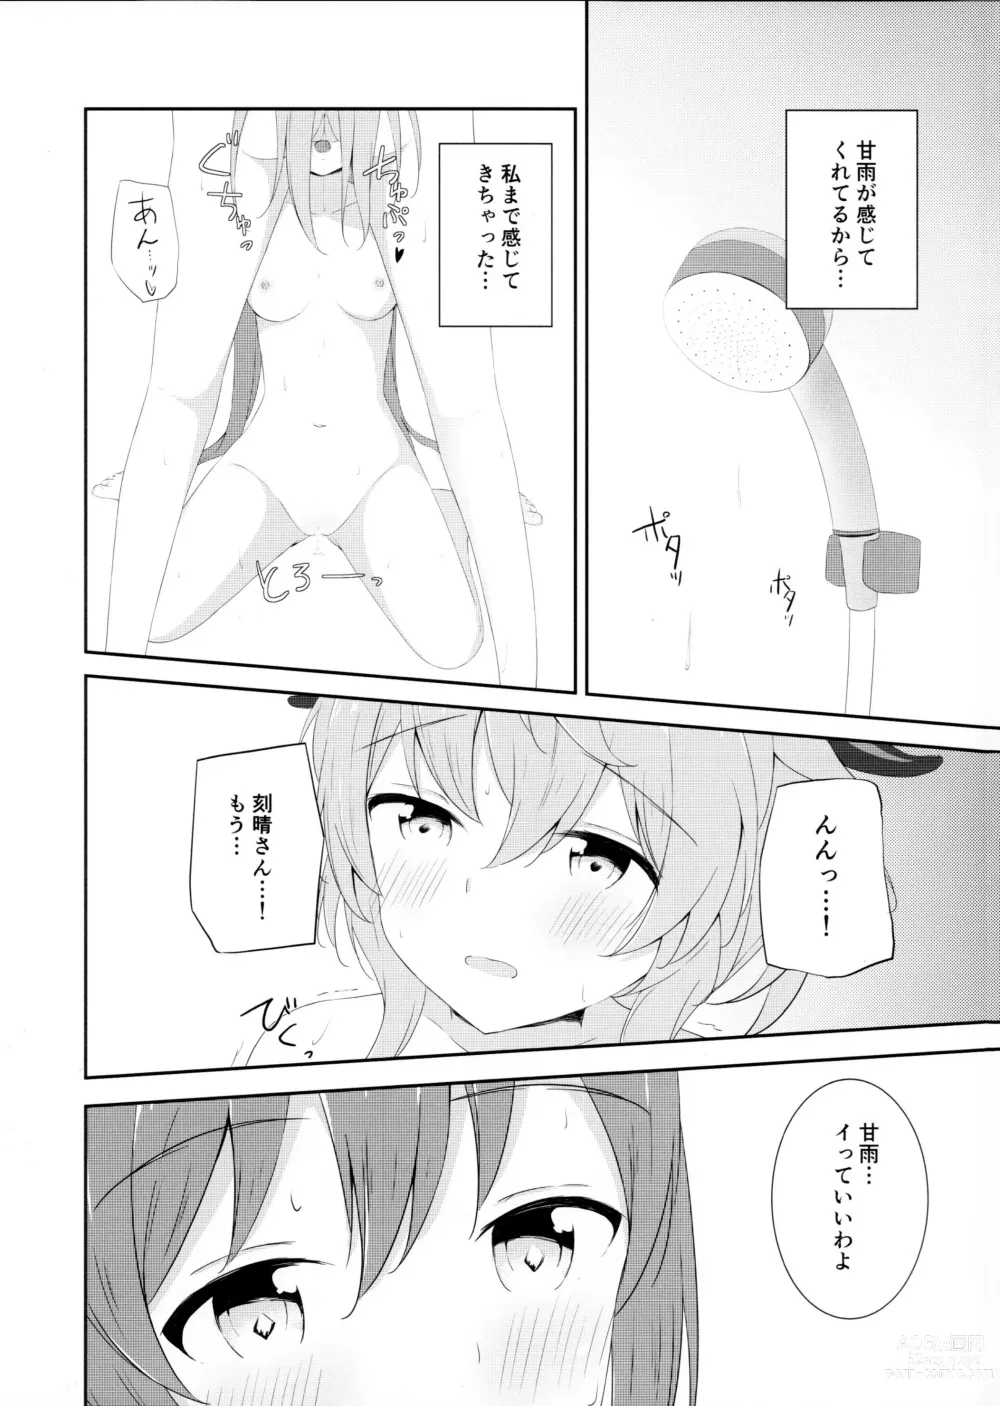 Page 11 of doujinshi KokuKan wa Echi ga Shitai!